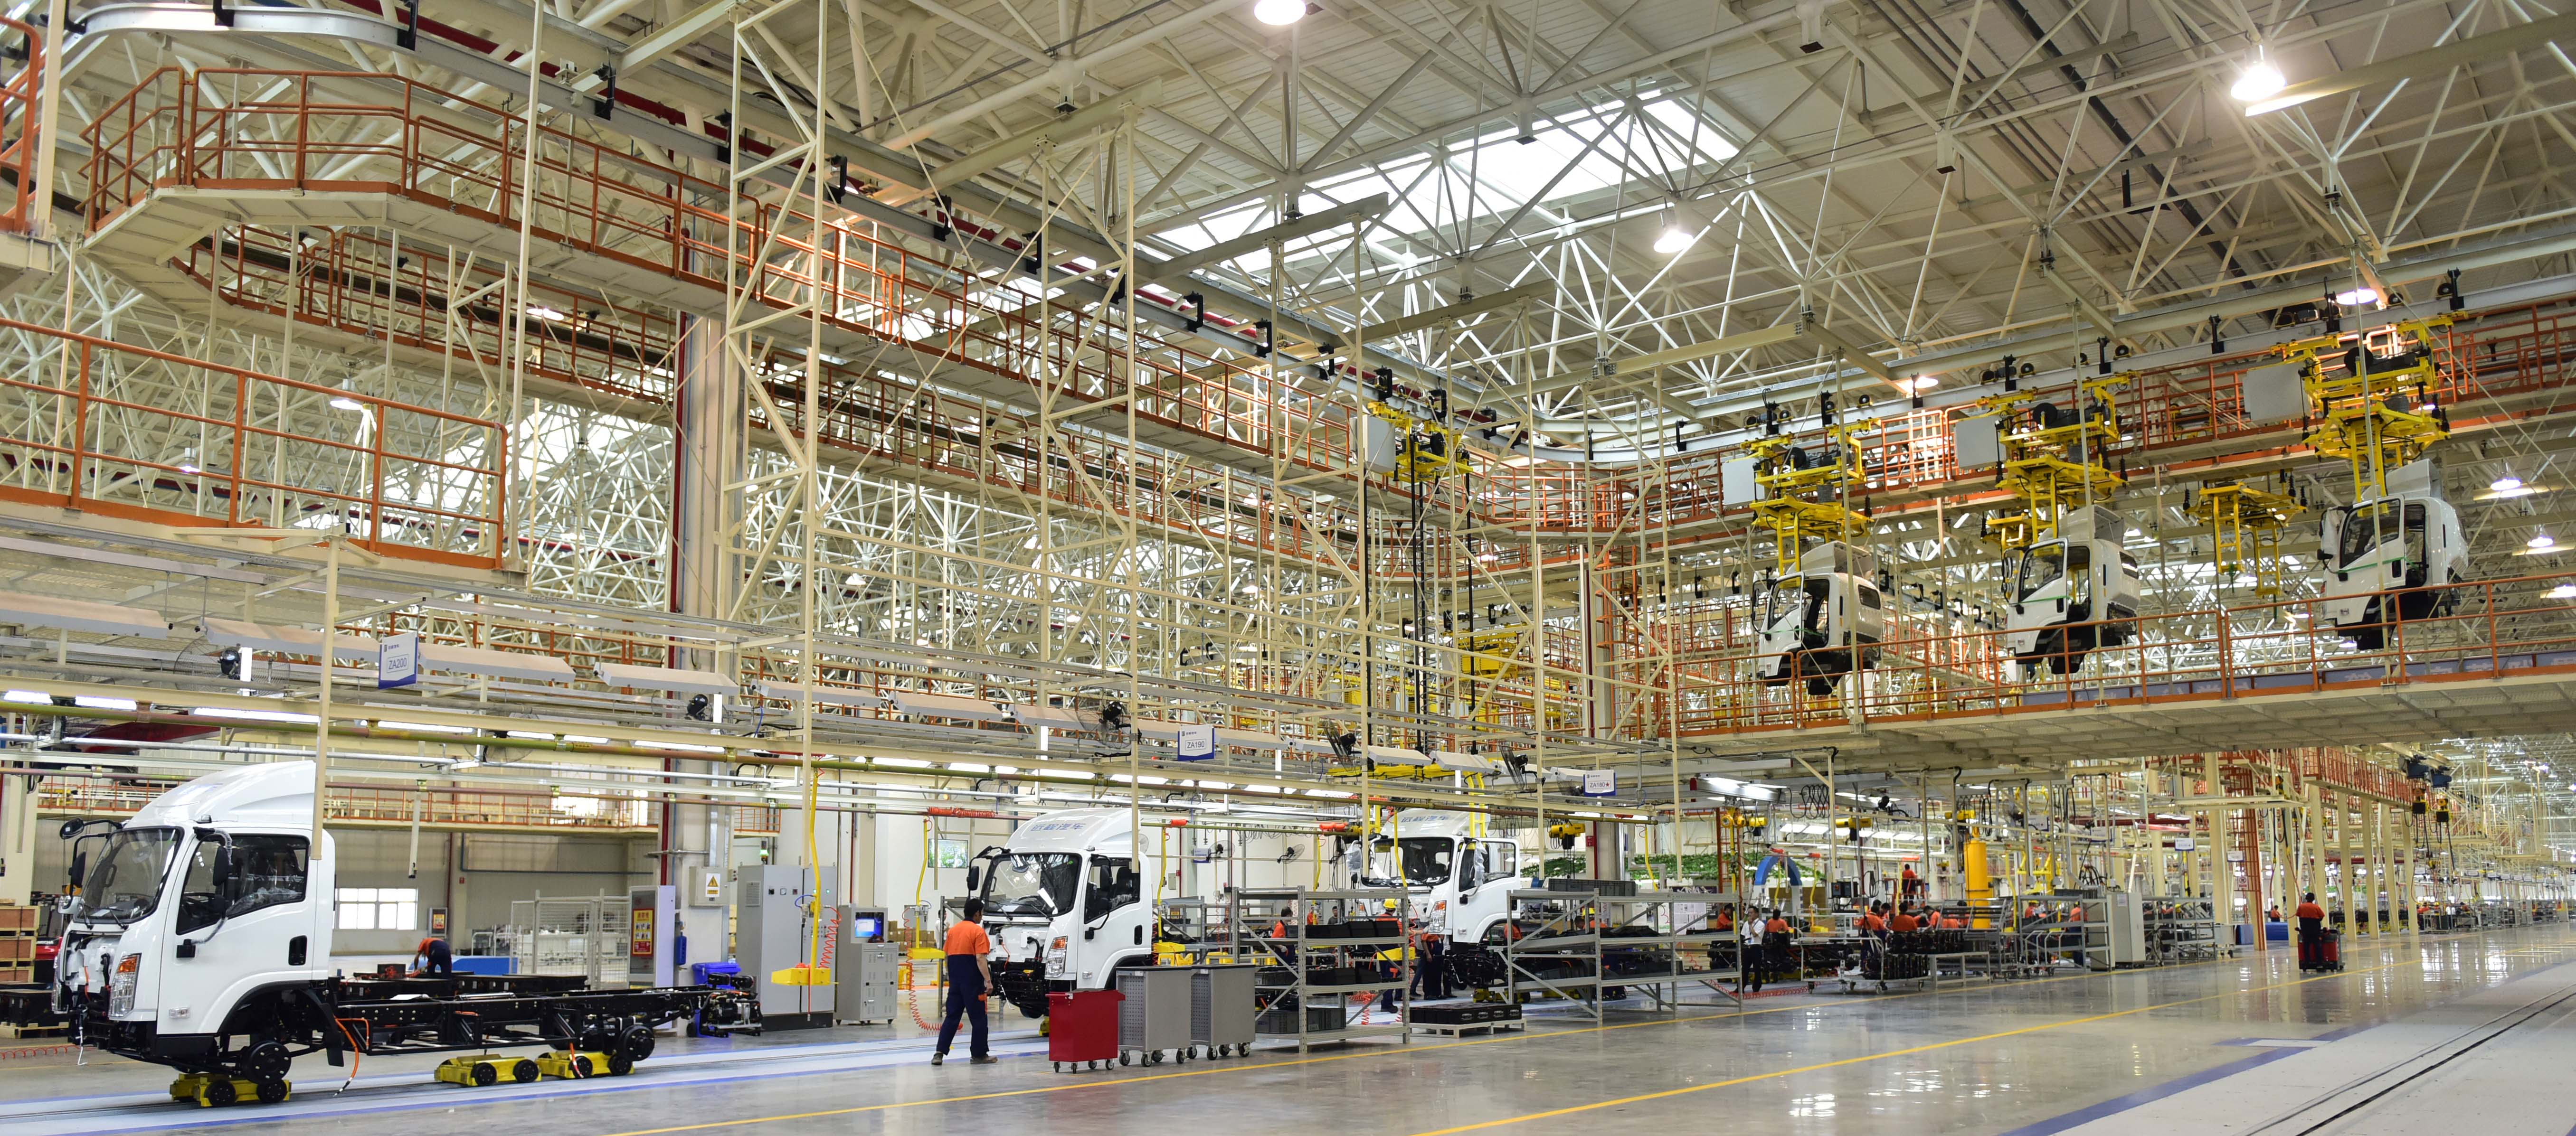 吉利南充项目总装车间内一派繁忙的生产景象。